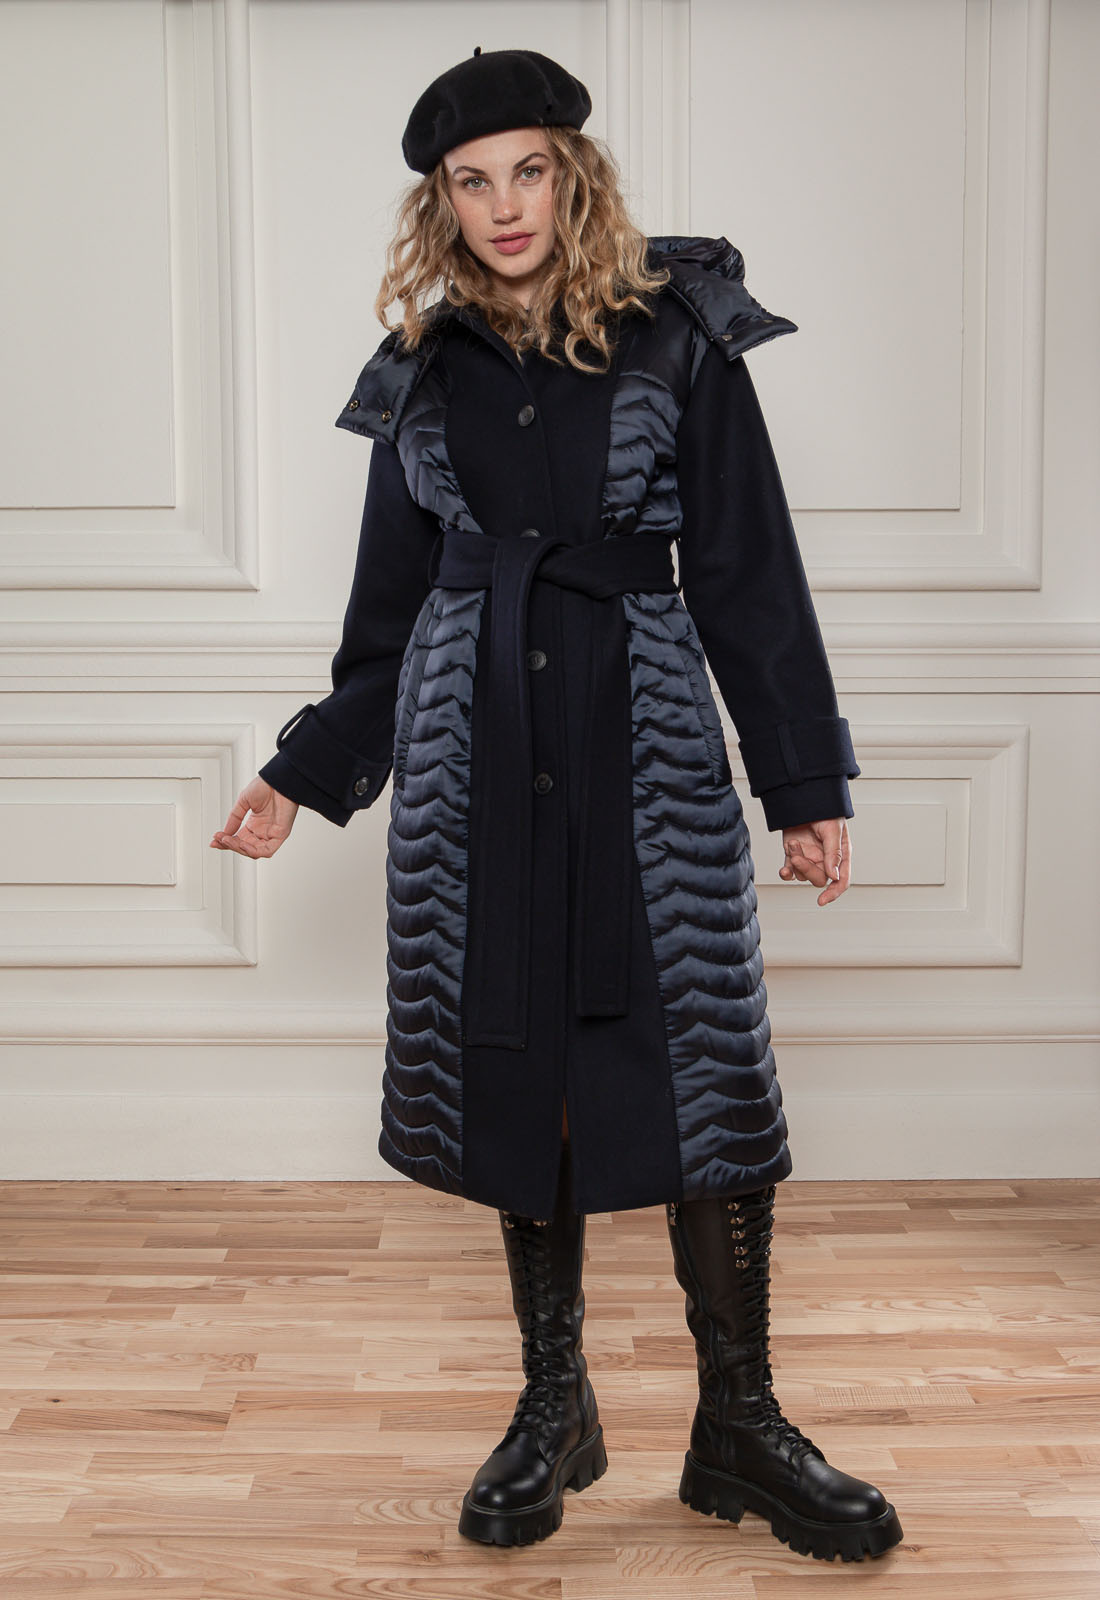 Комбинированное стеганое пальто Ферн